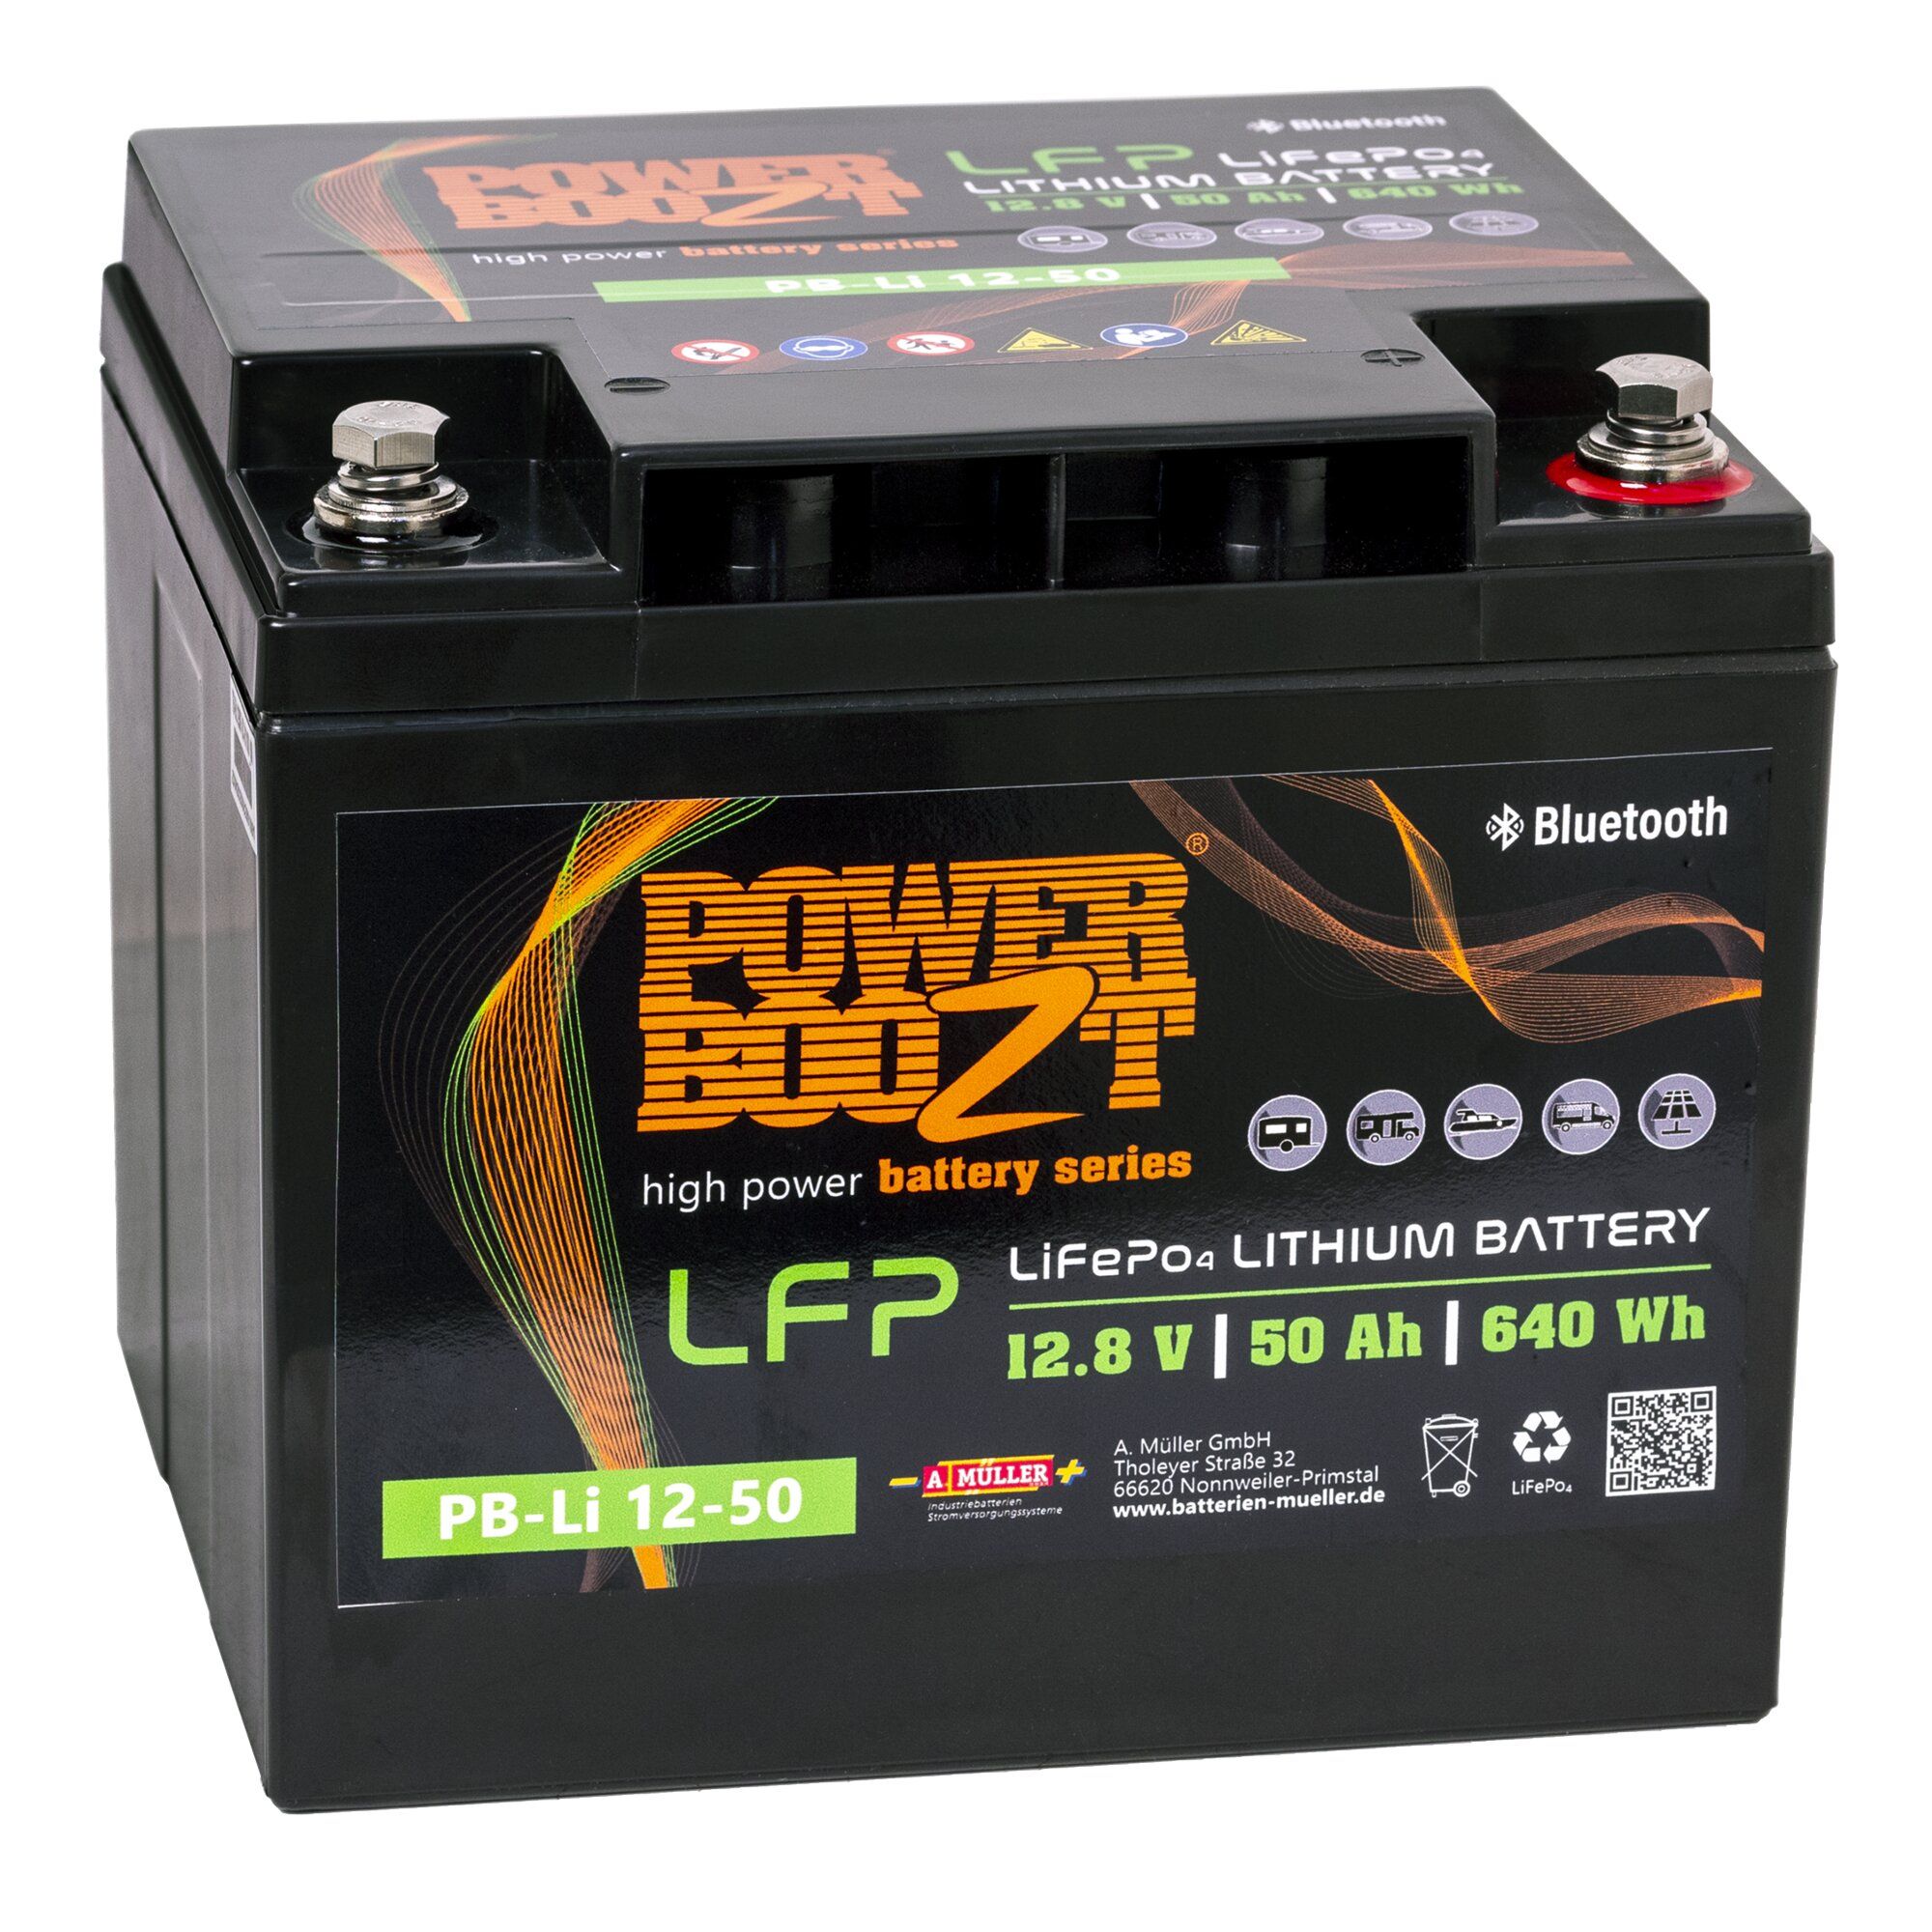 PowerBoozt Lithiová baterie 50 Ah